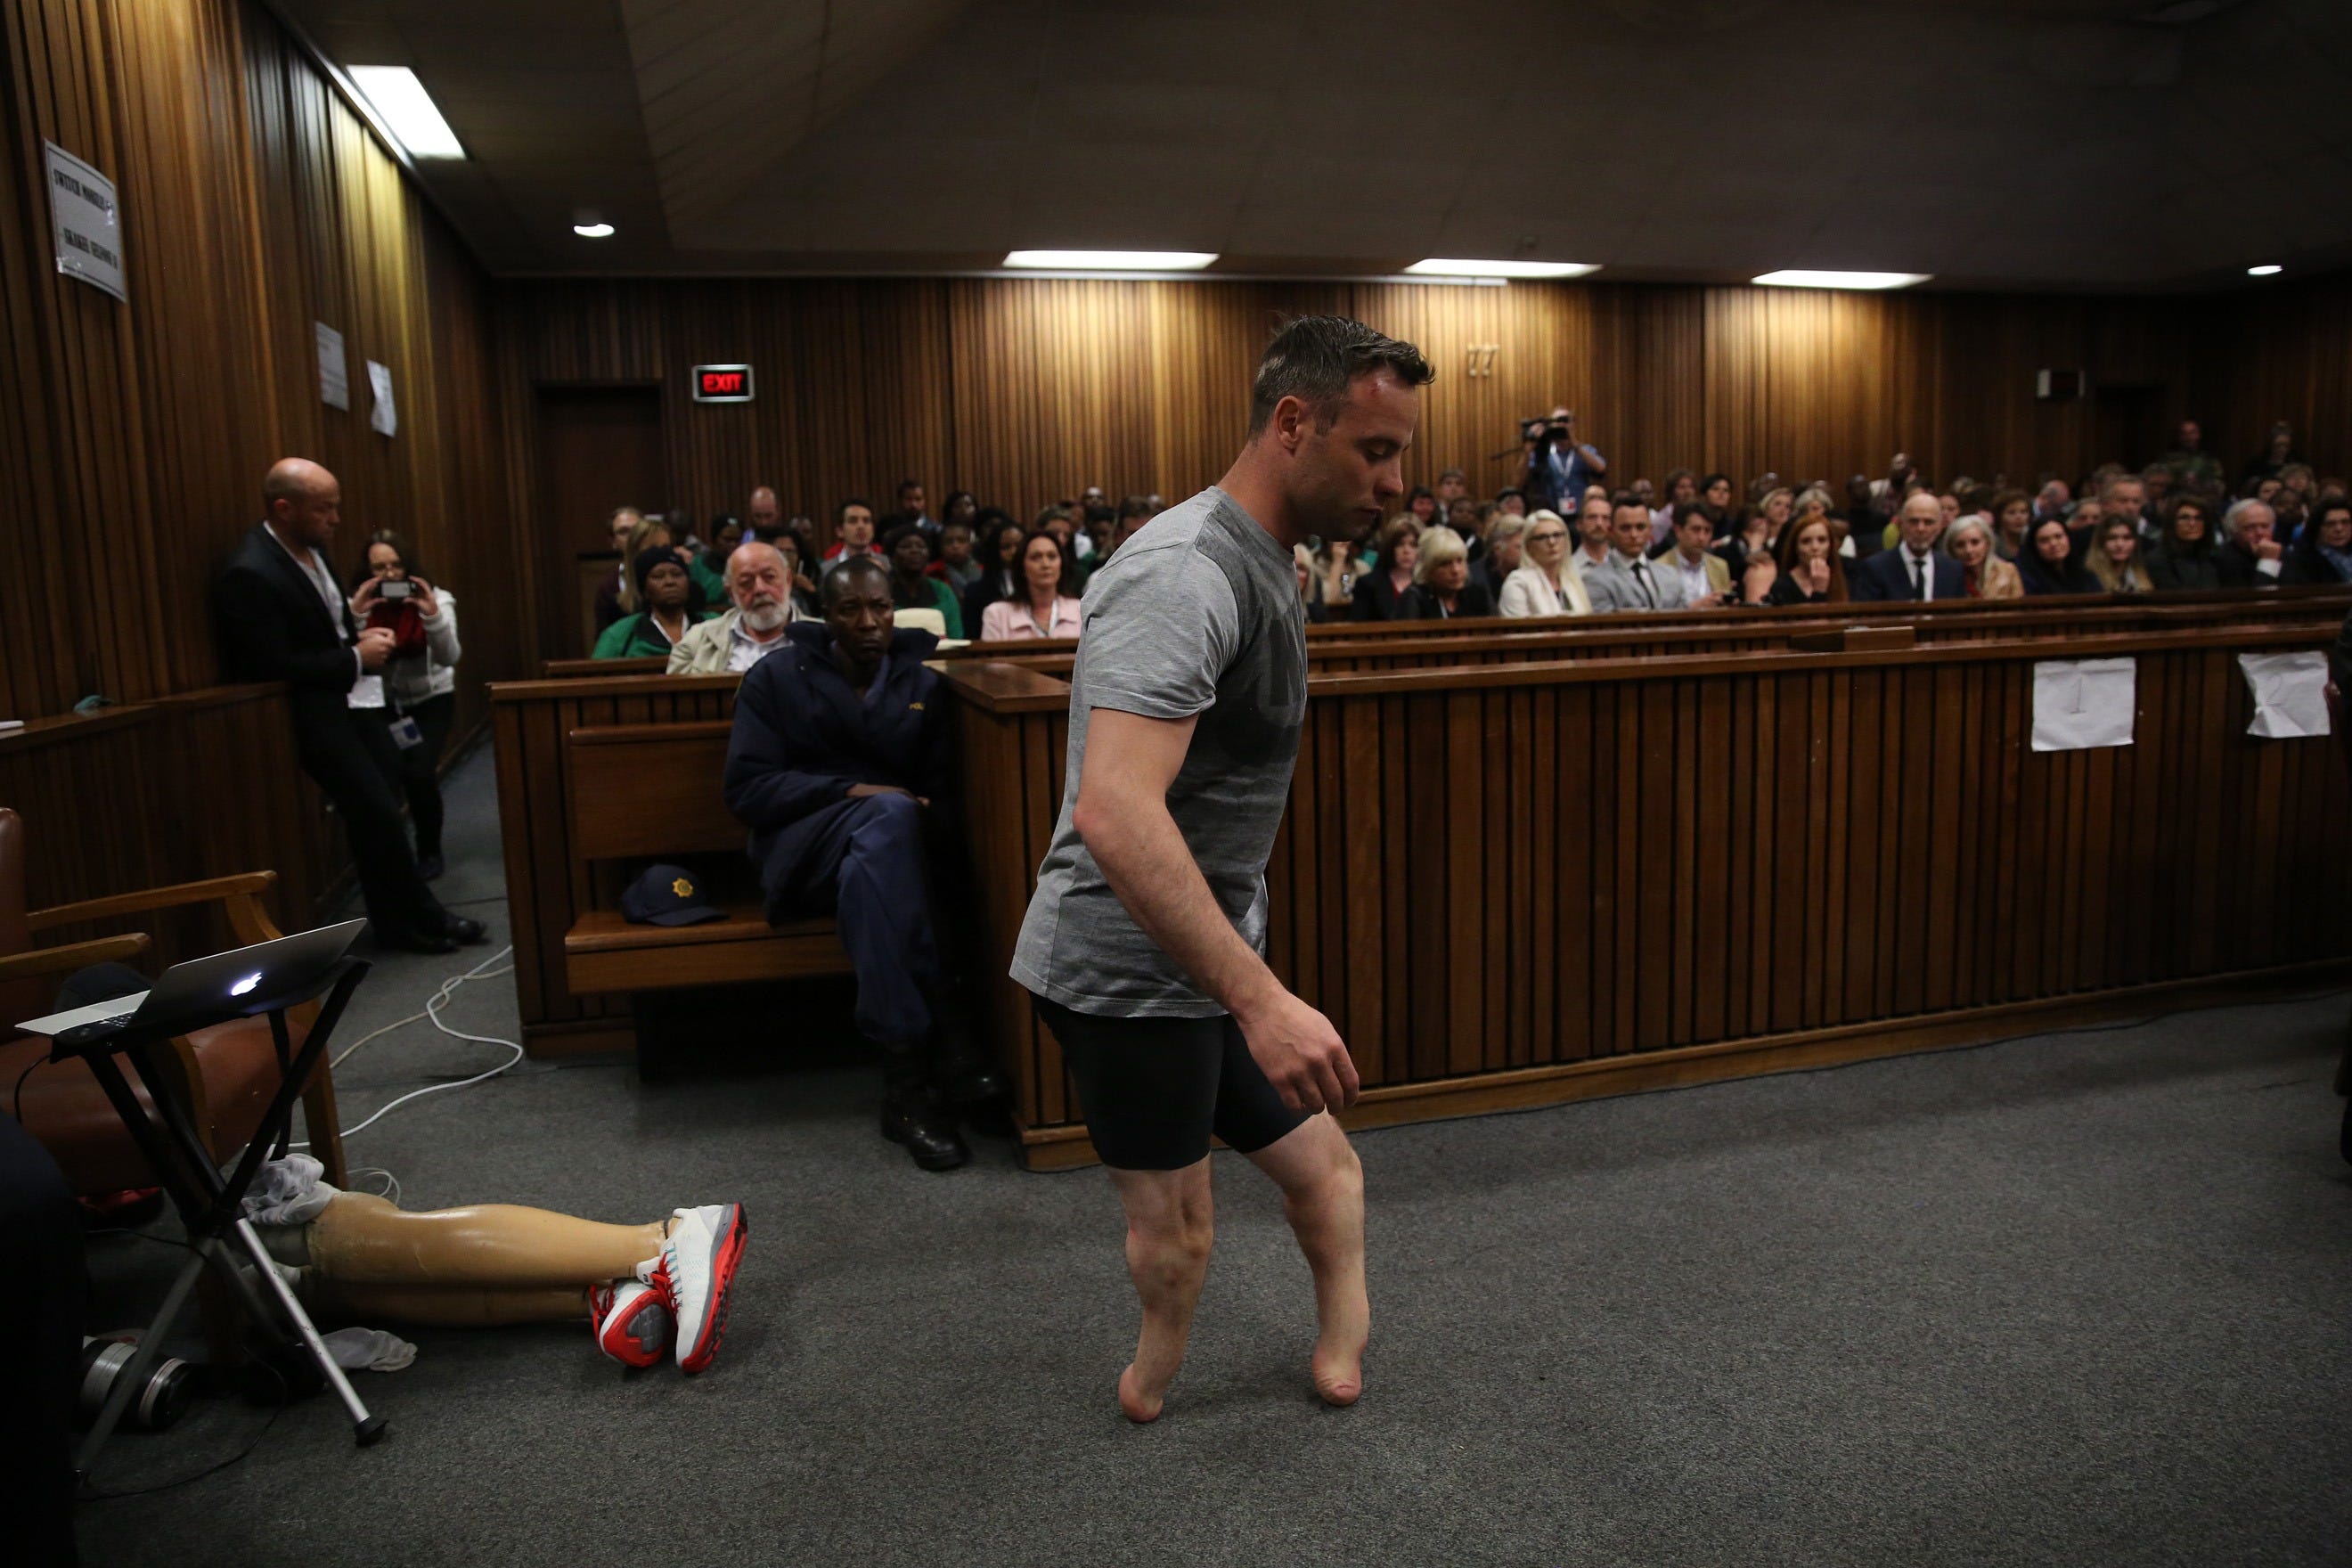 Pistorius ging während seiner Anhörung zur Neuverurteilung im Jahr 2016 ohne seine Beinprothesen.